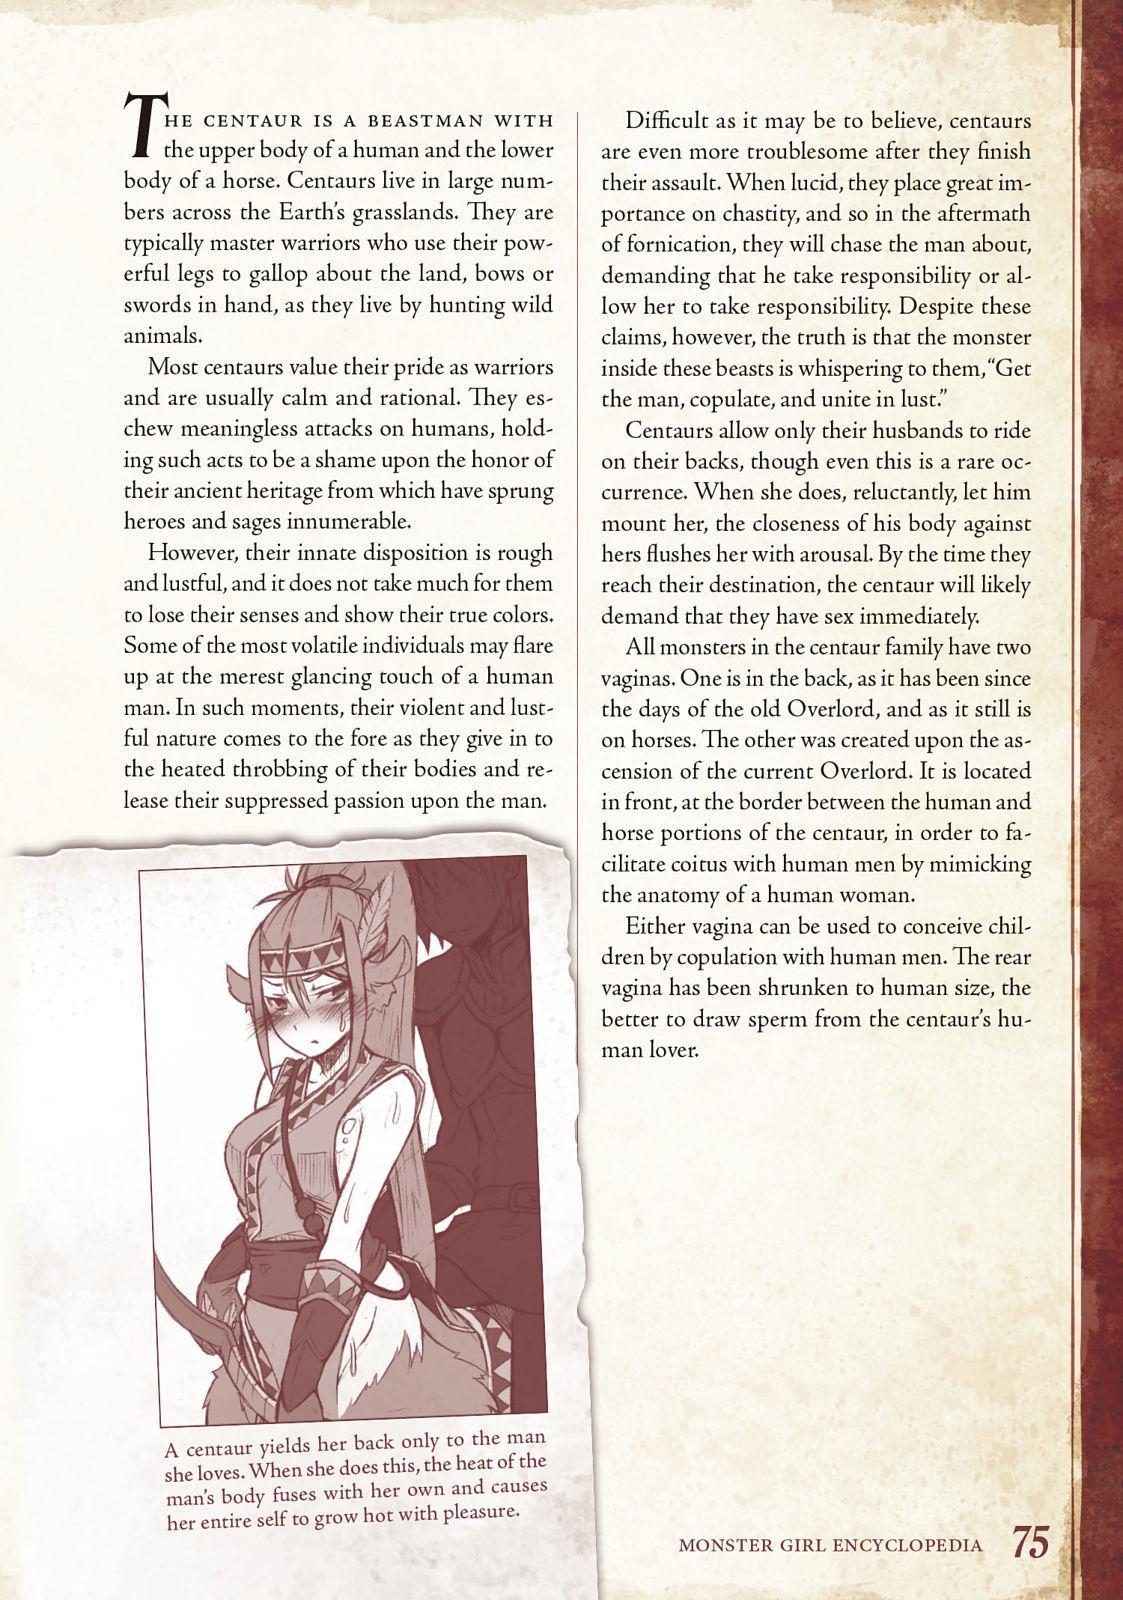 Monster Girl Encyclopedia Vol. 1 75